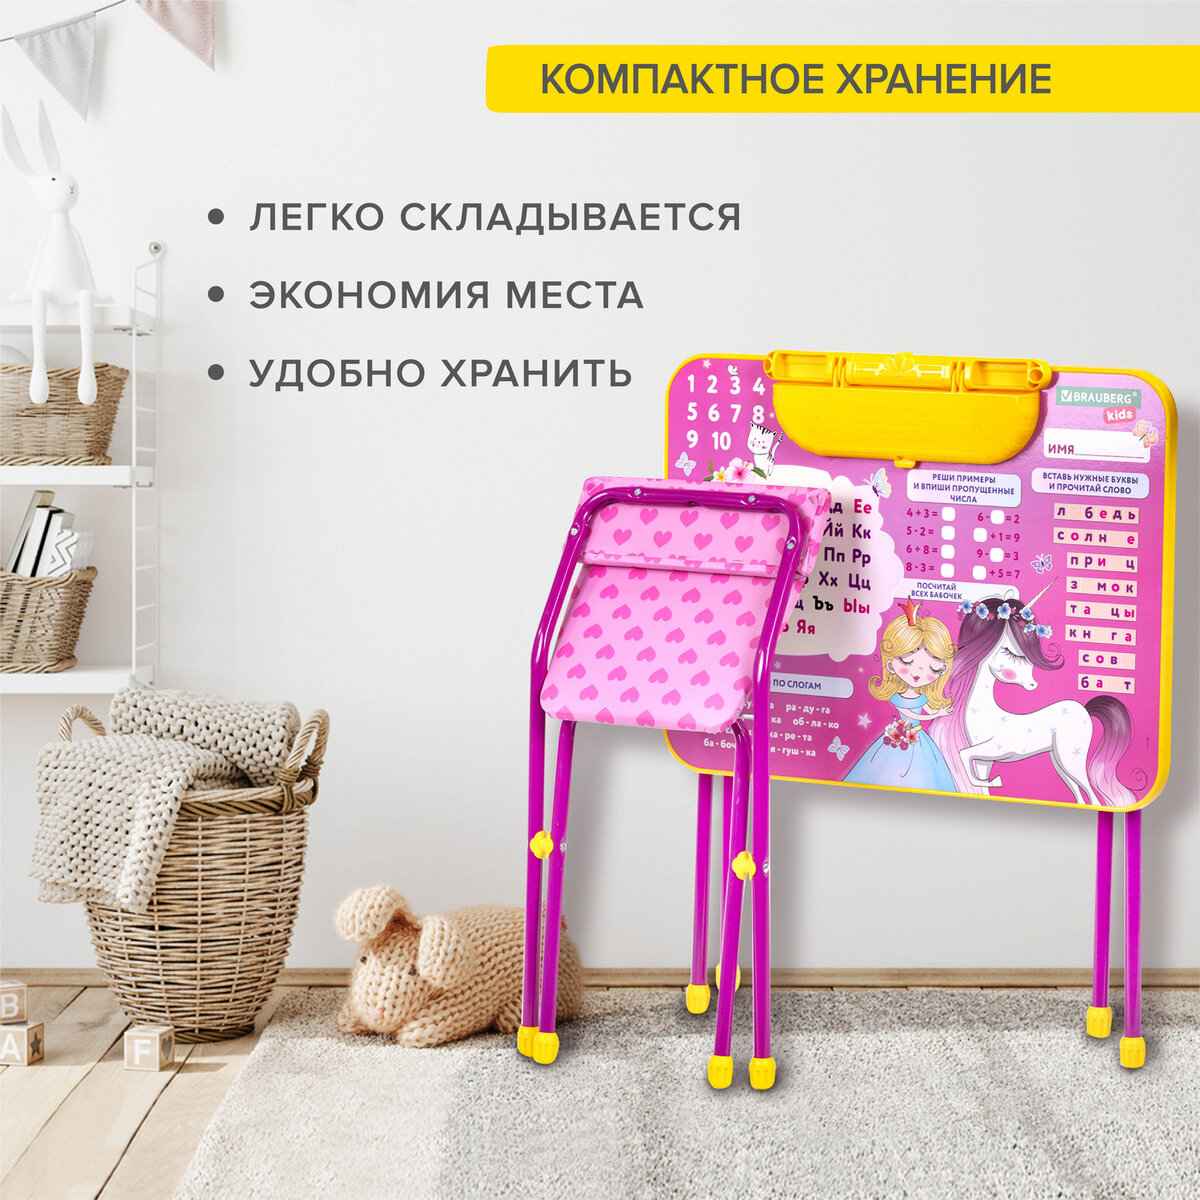 Столик и стульчик детский Brauberg игровой набор для развивающих игр для девочки розовый Принцесса - фото 7